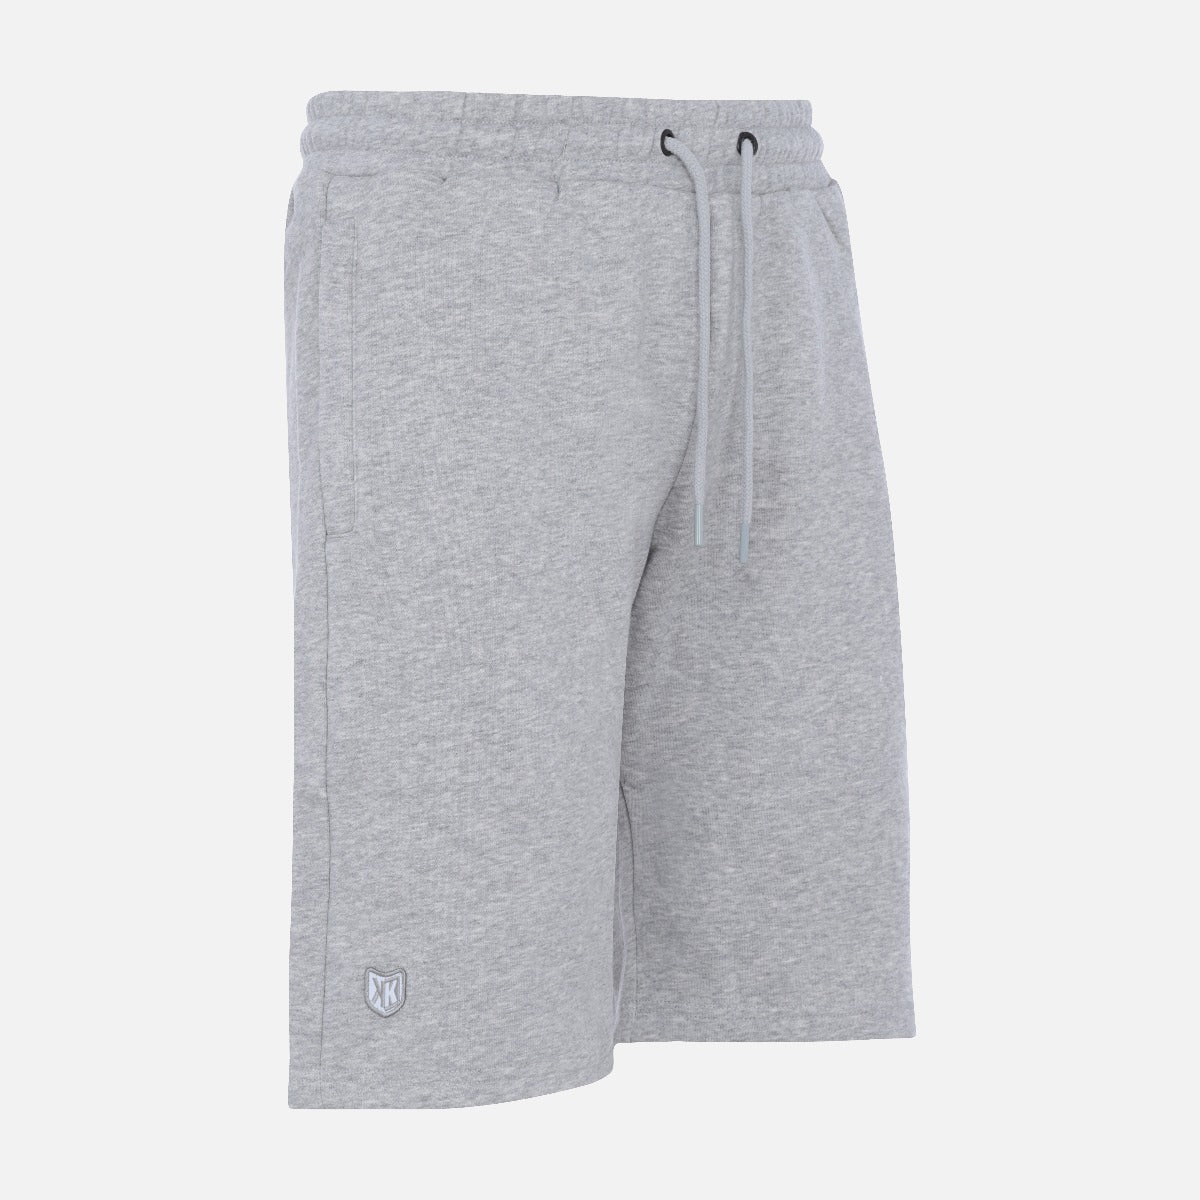 FK Basic Shorts - Gray